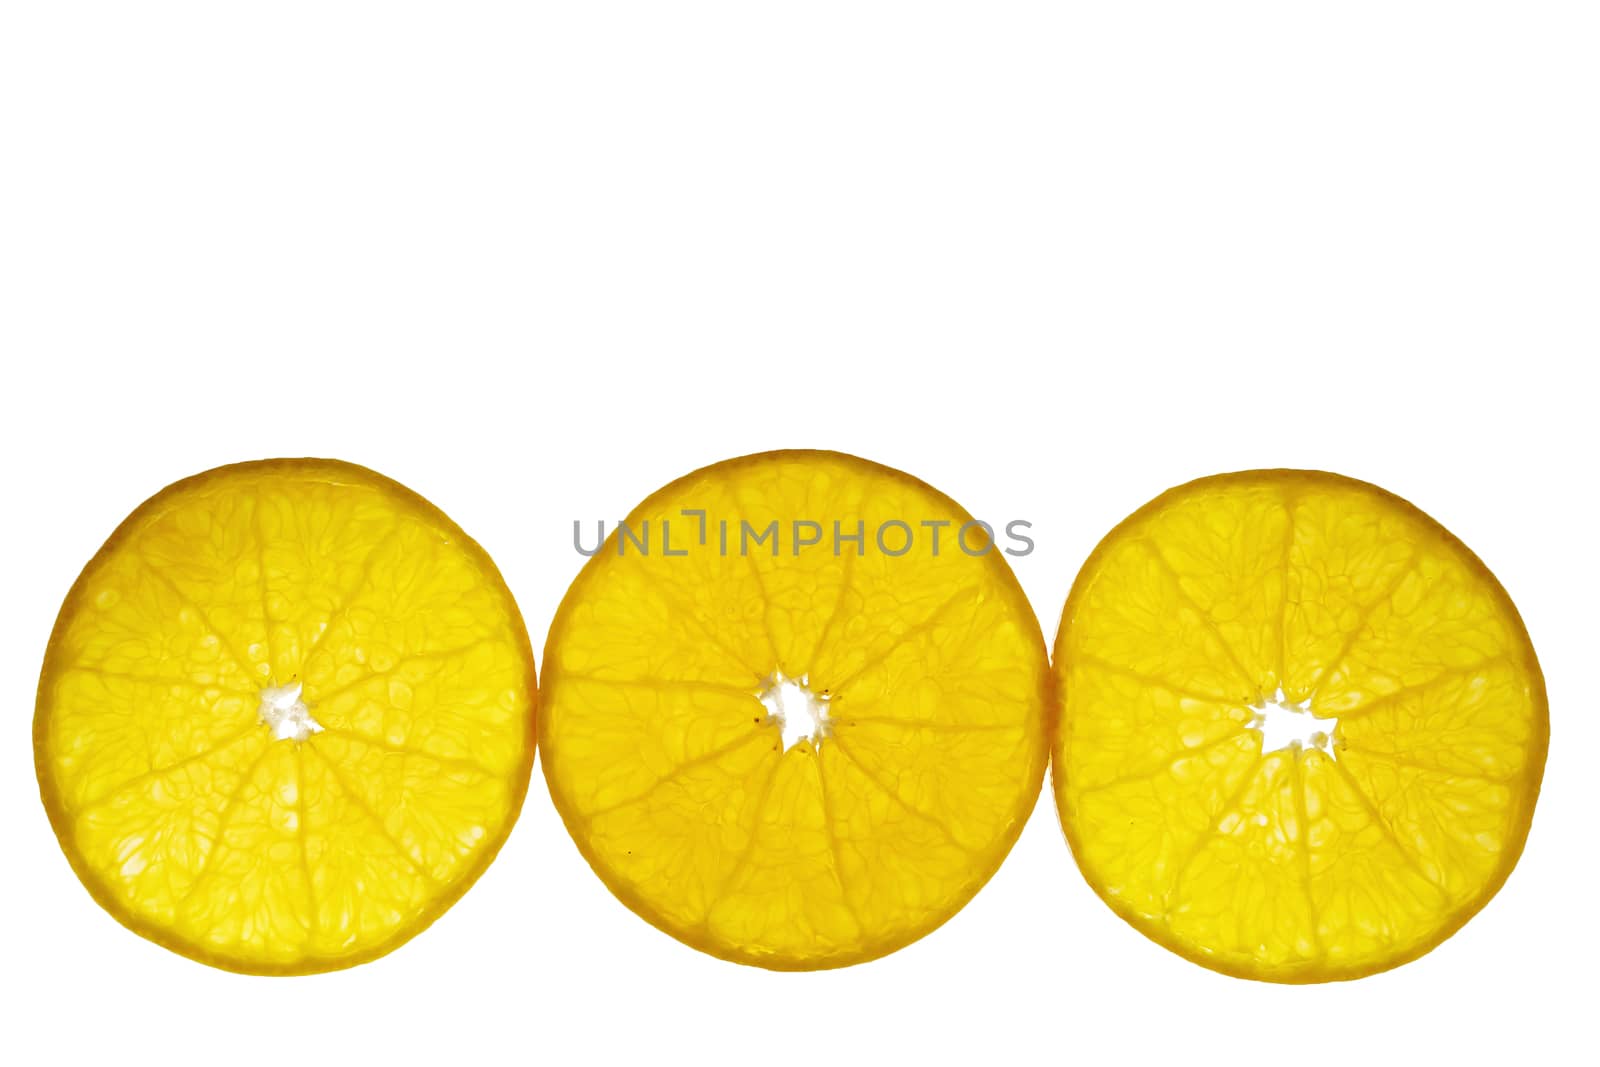 Fresh sliced juicy orange fruit set over white background - tropical orange fruit texture for background use